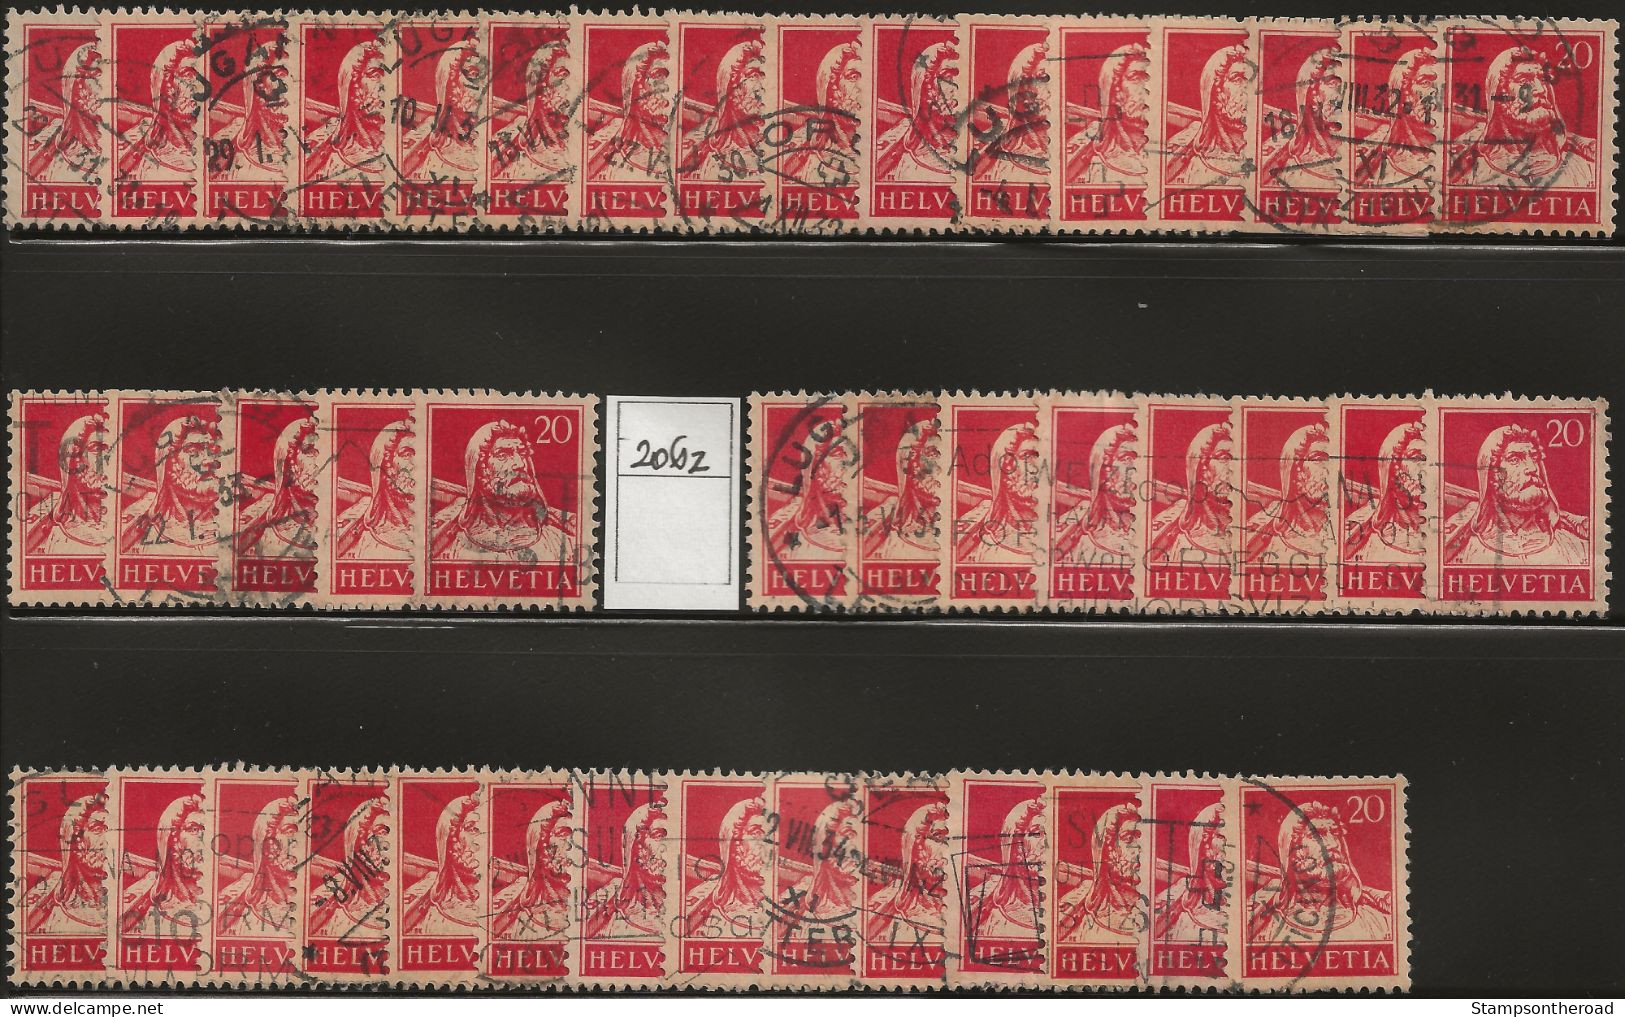 SVLT01 - Svizzera 1862/1932, Lotto di 415 francobolli nuovi con e senza linguella e usati